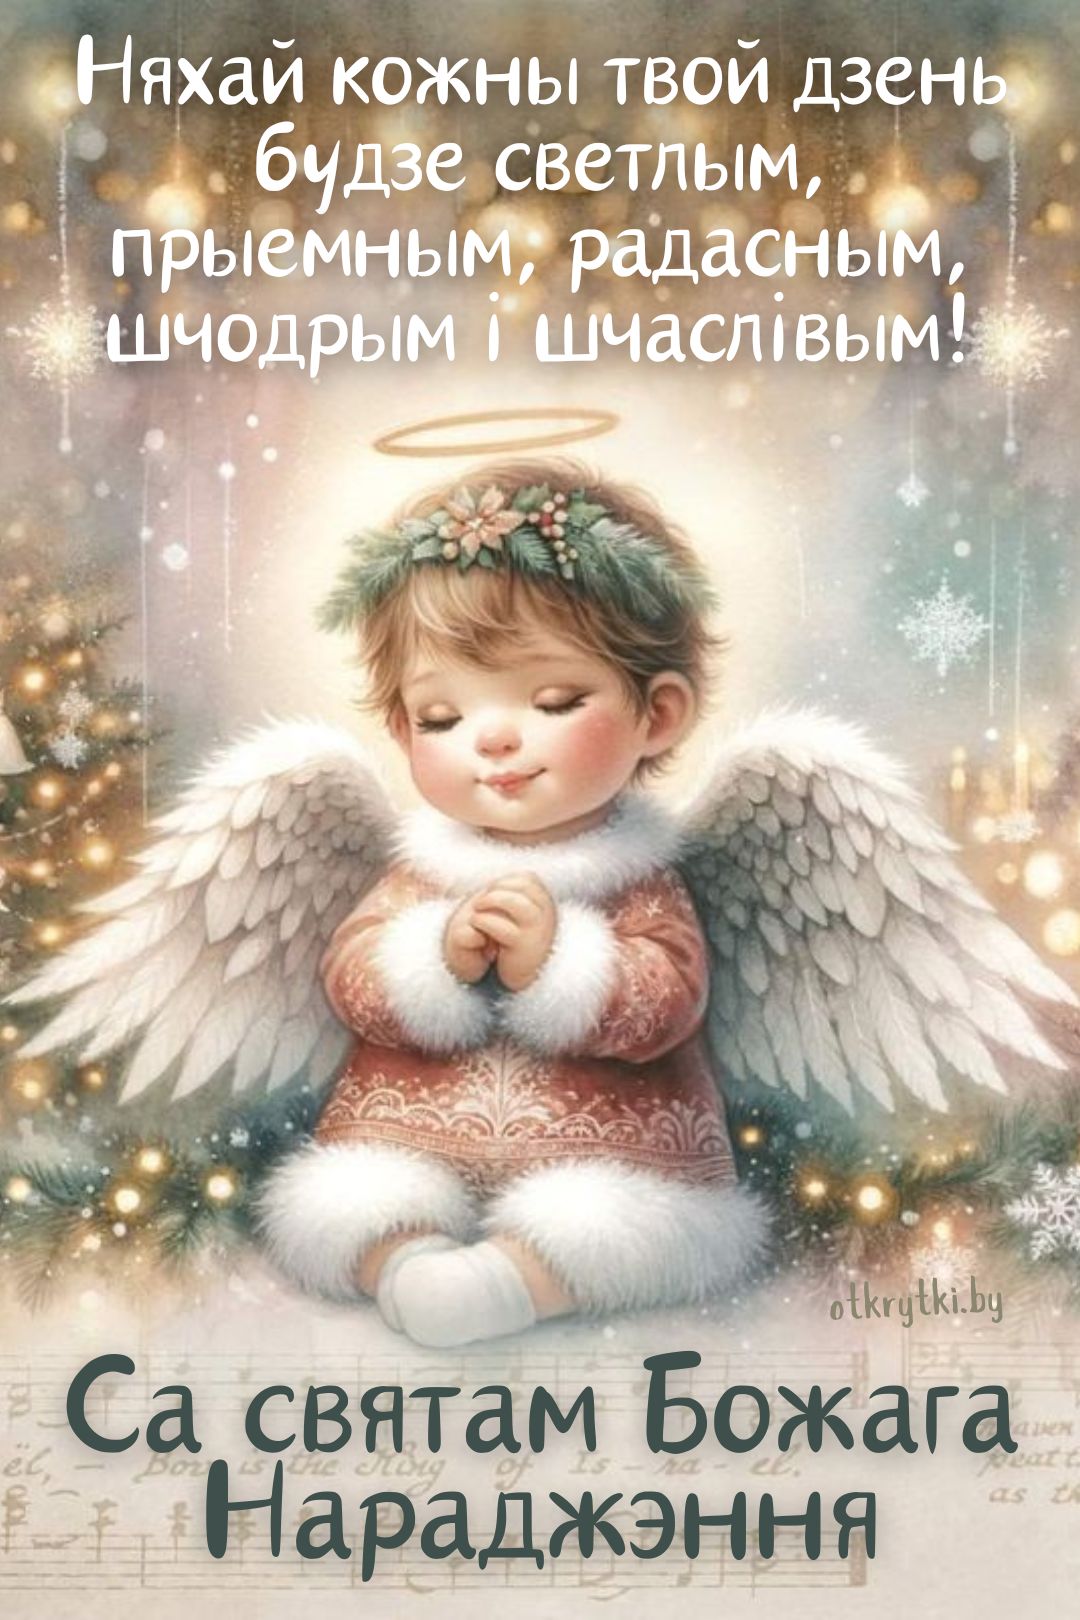 Белорусская открытка с Рождеством